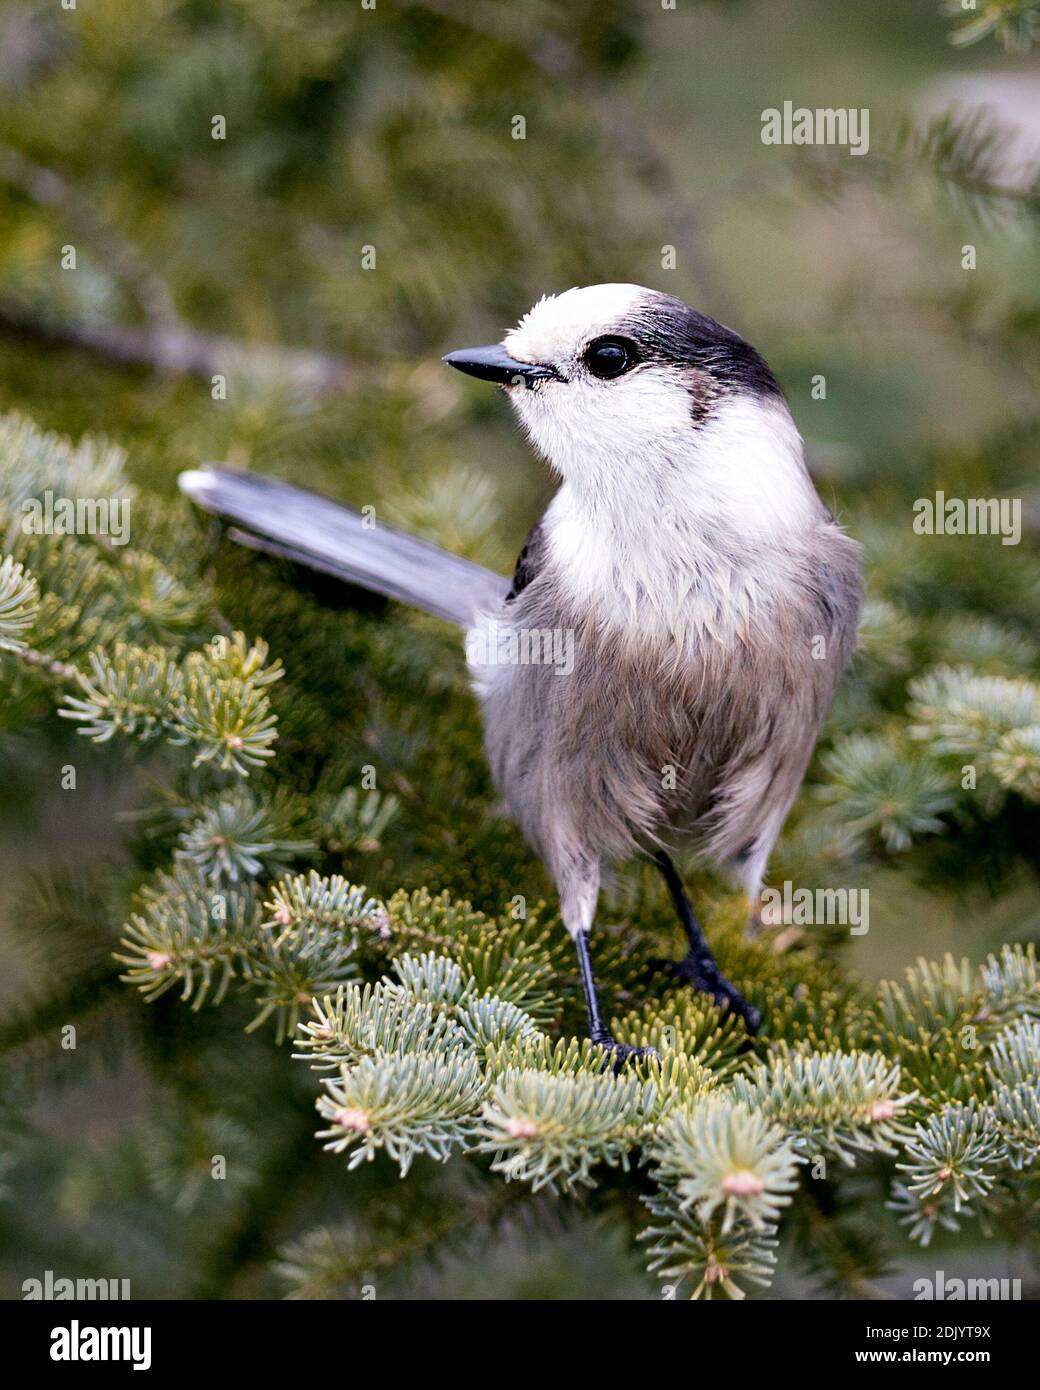 Vista ravvicinata del profilo Gray Jay appollaiato su un ramo di abeti nel suo habitat, con piumaggio grigio e coda di uccelli. Foto di Natale. Immagine. Foto Stock